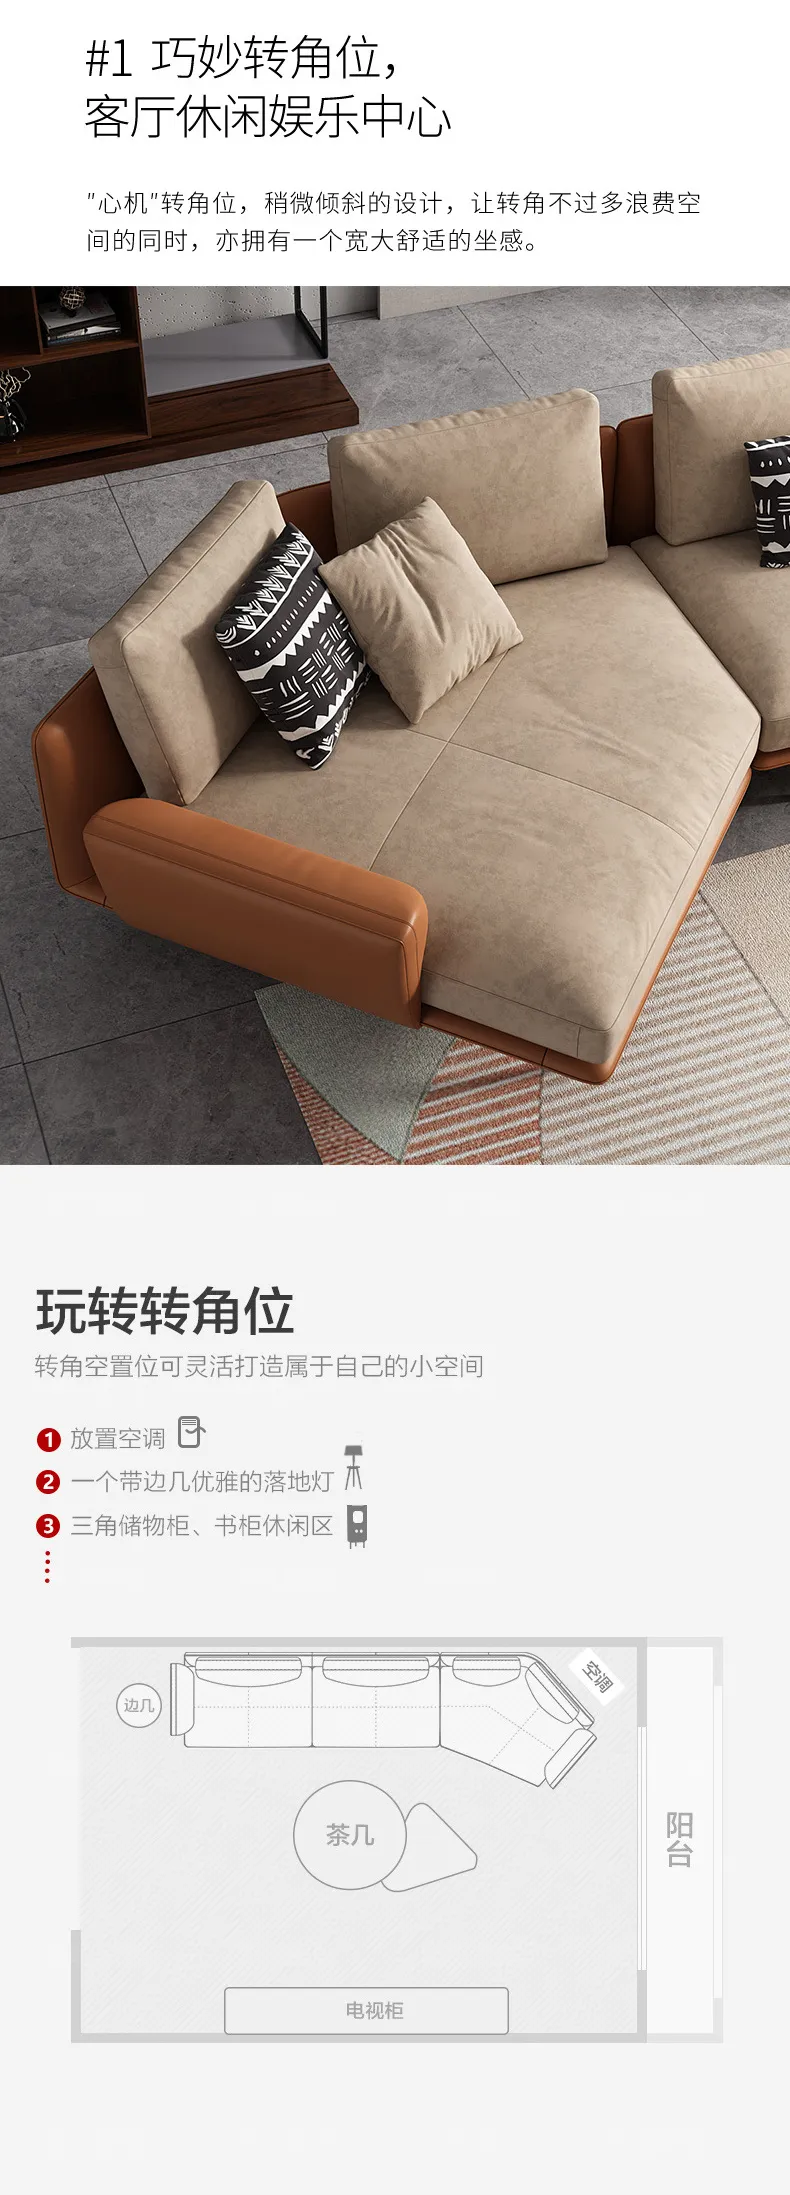 华松居 意式布艺沙发客厅免洗简约科技布沙发极简沙发2077-23(图2)